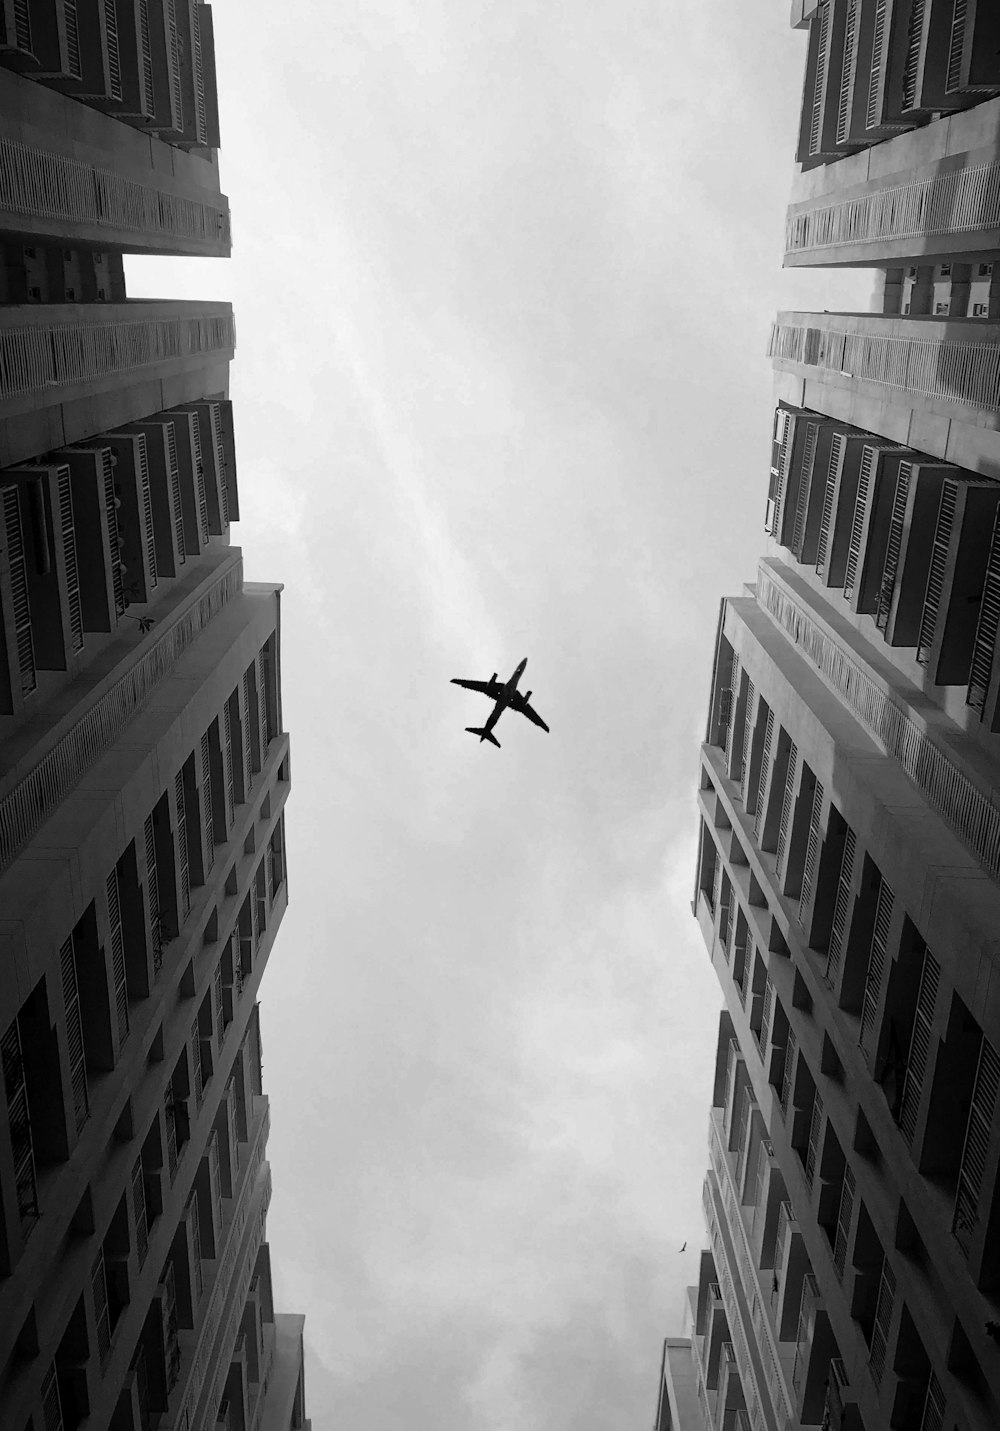 Foto in scala di grigi dell'aereo di linea sopra un grattacielo